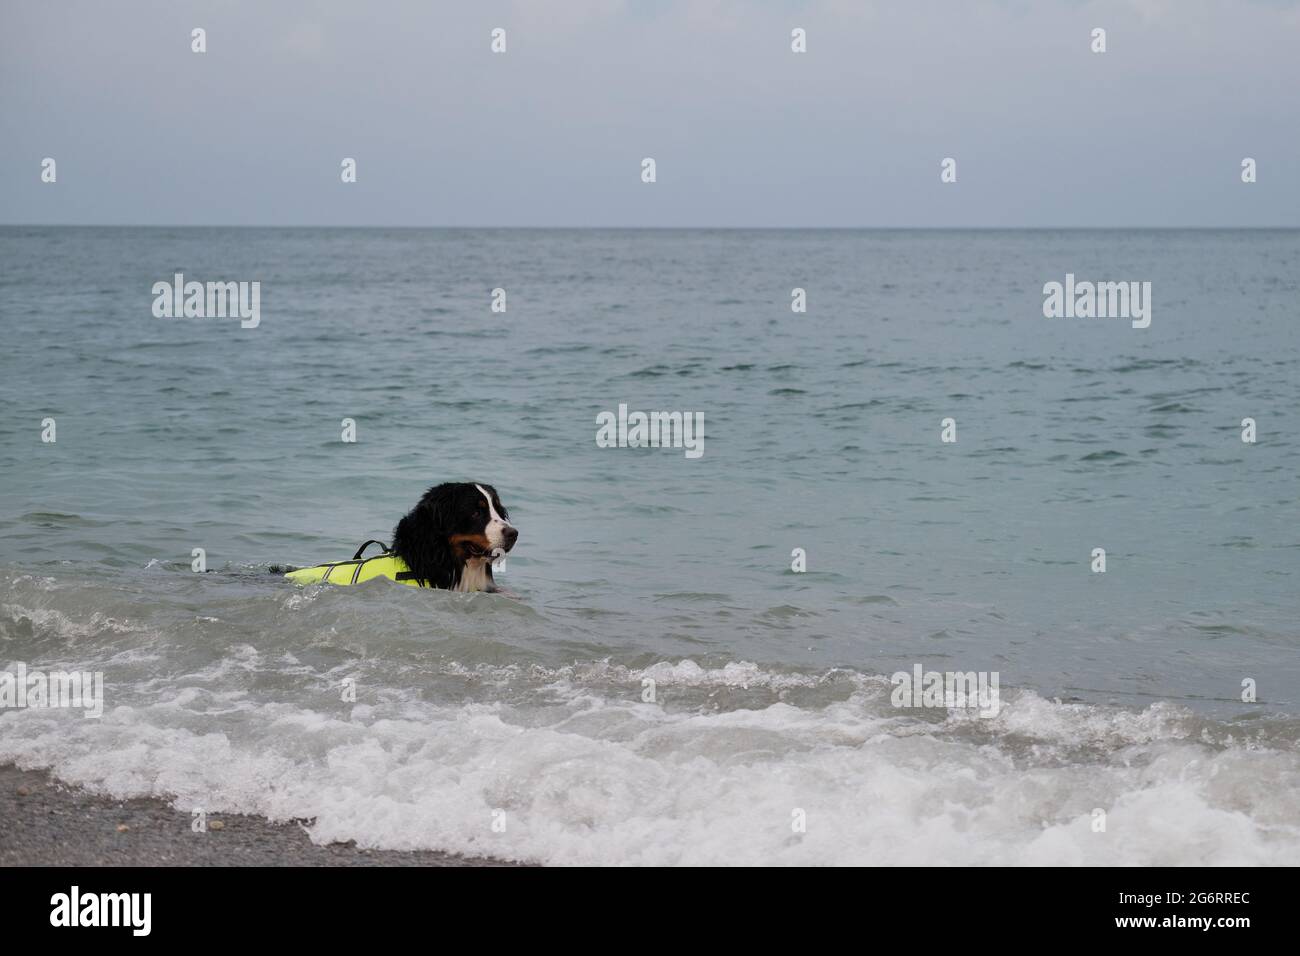 Rettungshund schwimmt im Wasser und genießt ein ruhiges Leben ohne Zwischenfälle. Berner Berghund in leuchtend grüner Schwimmweste auf See. Stockfoto